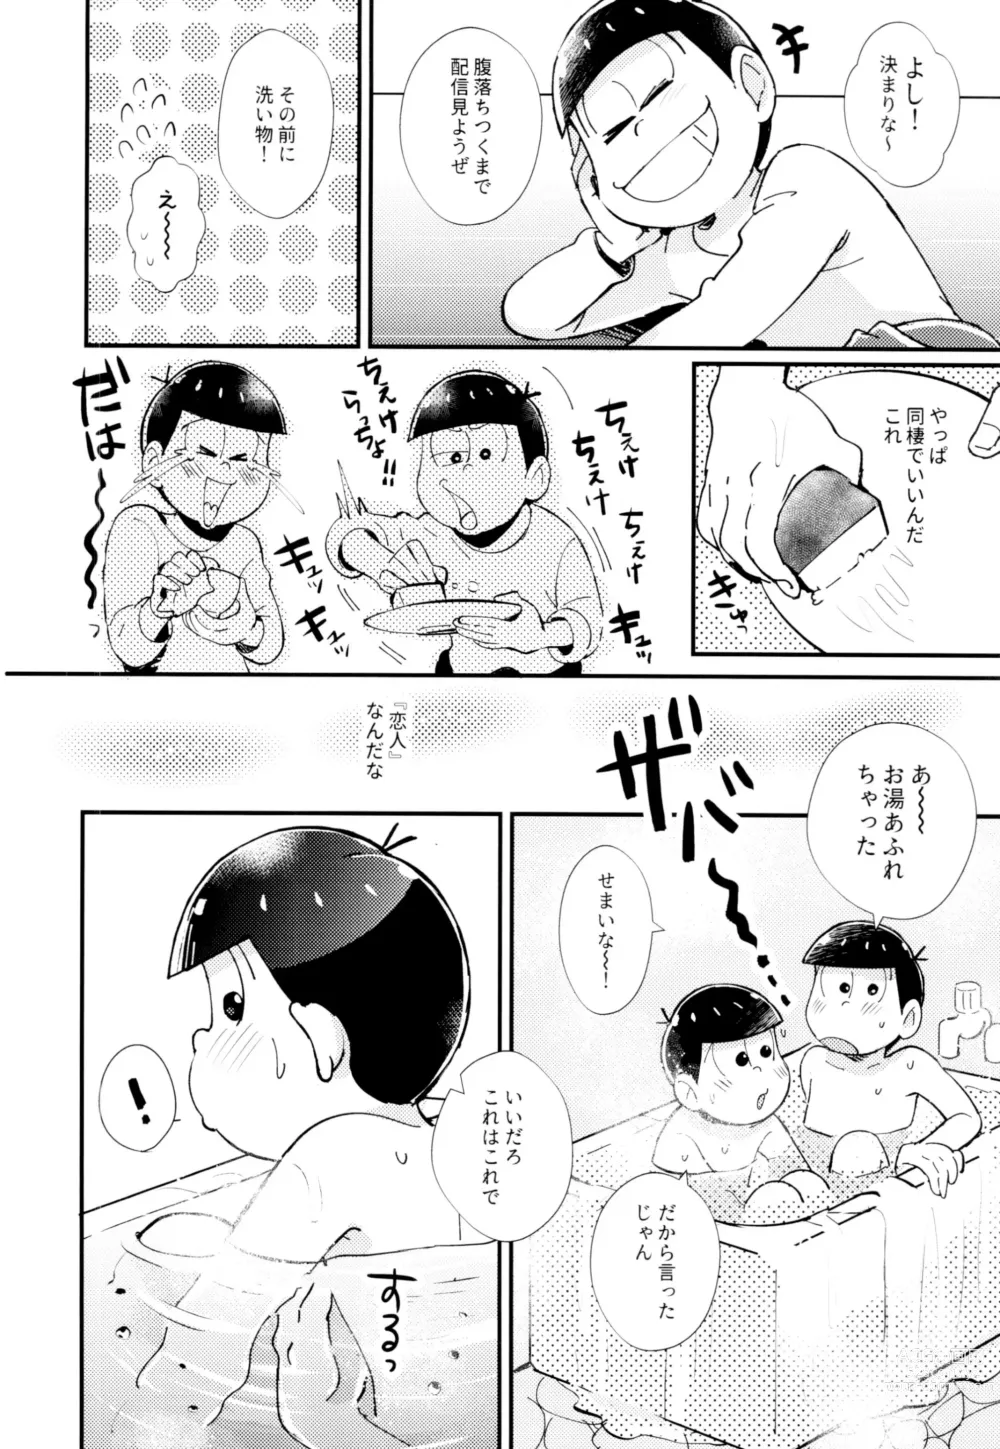 Page 24 of doujinshi 2-haku 3-kka, Kimi to Sakurasaku Apart de